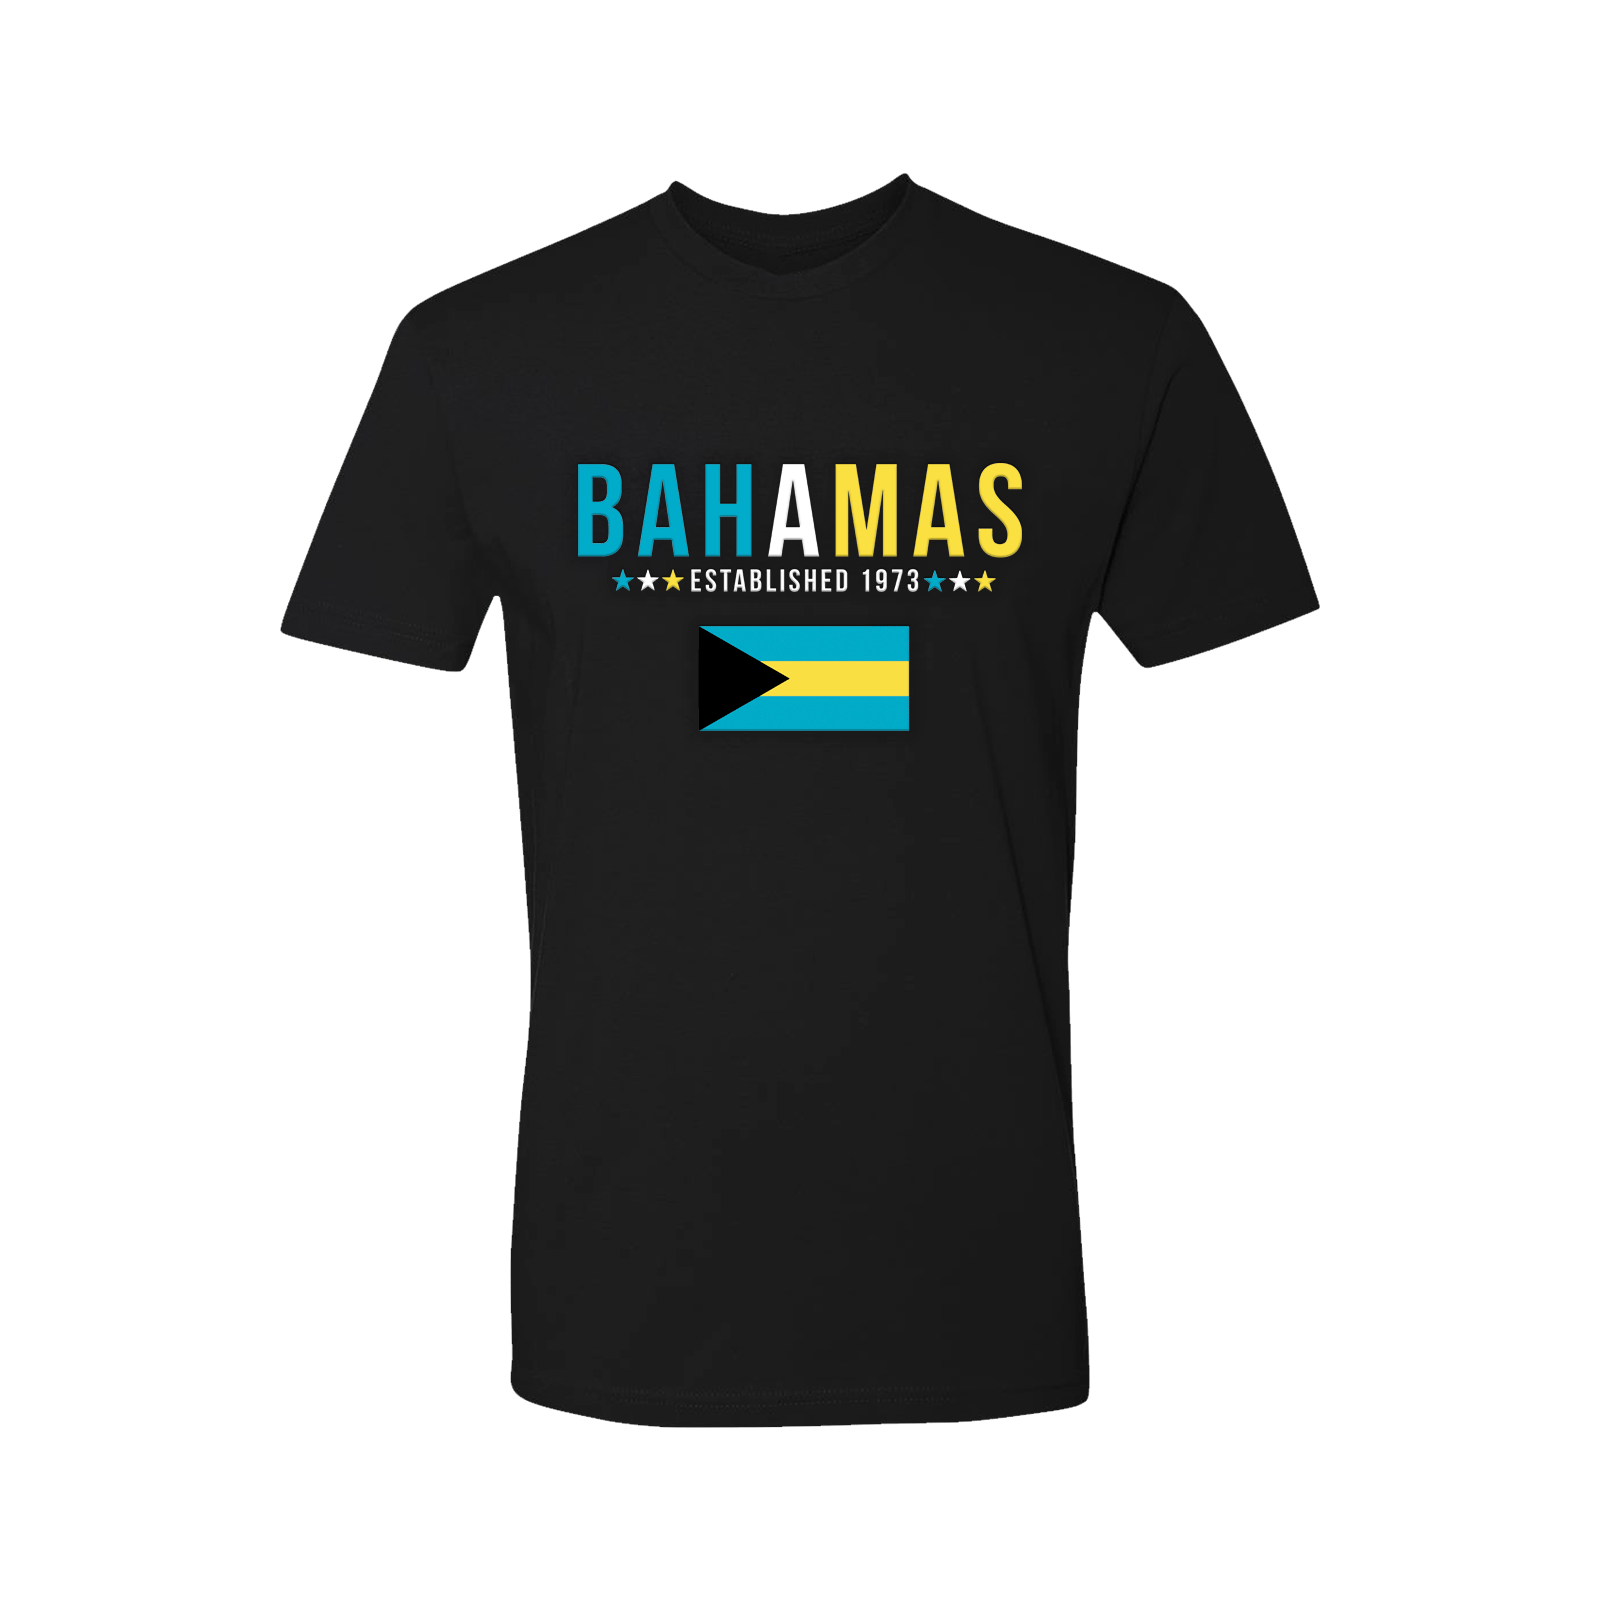 Bahamas Short Sleeve Shirt - Kids